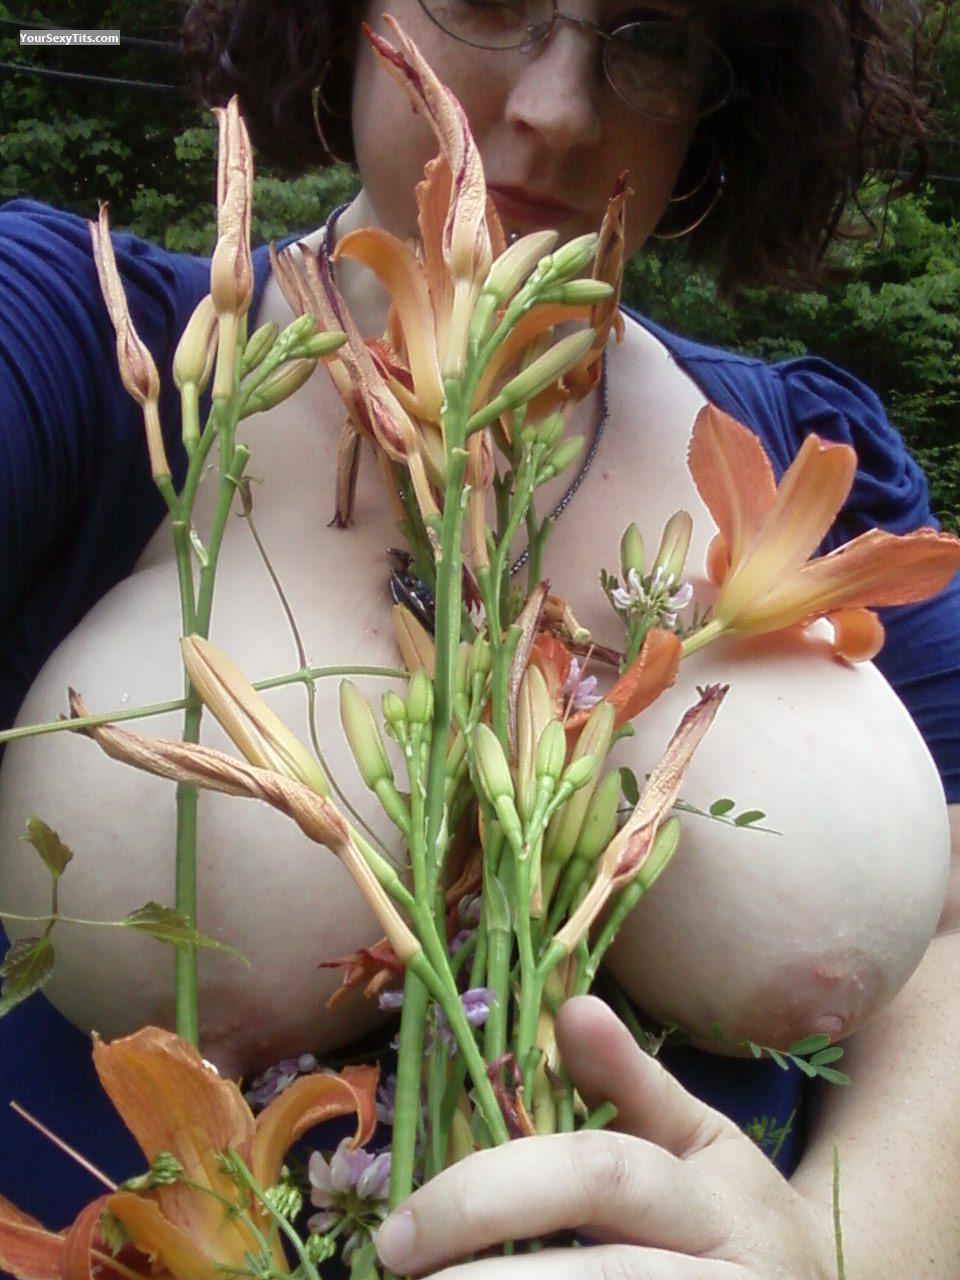 Mein Extrem grosser Busen Topless Selbstporträt von Peachesncream